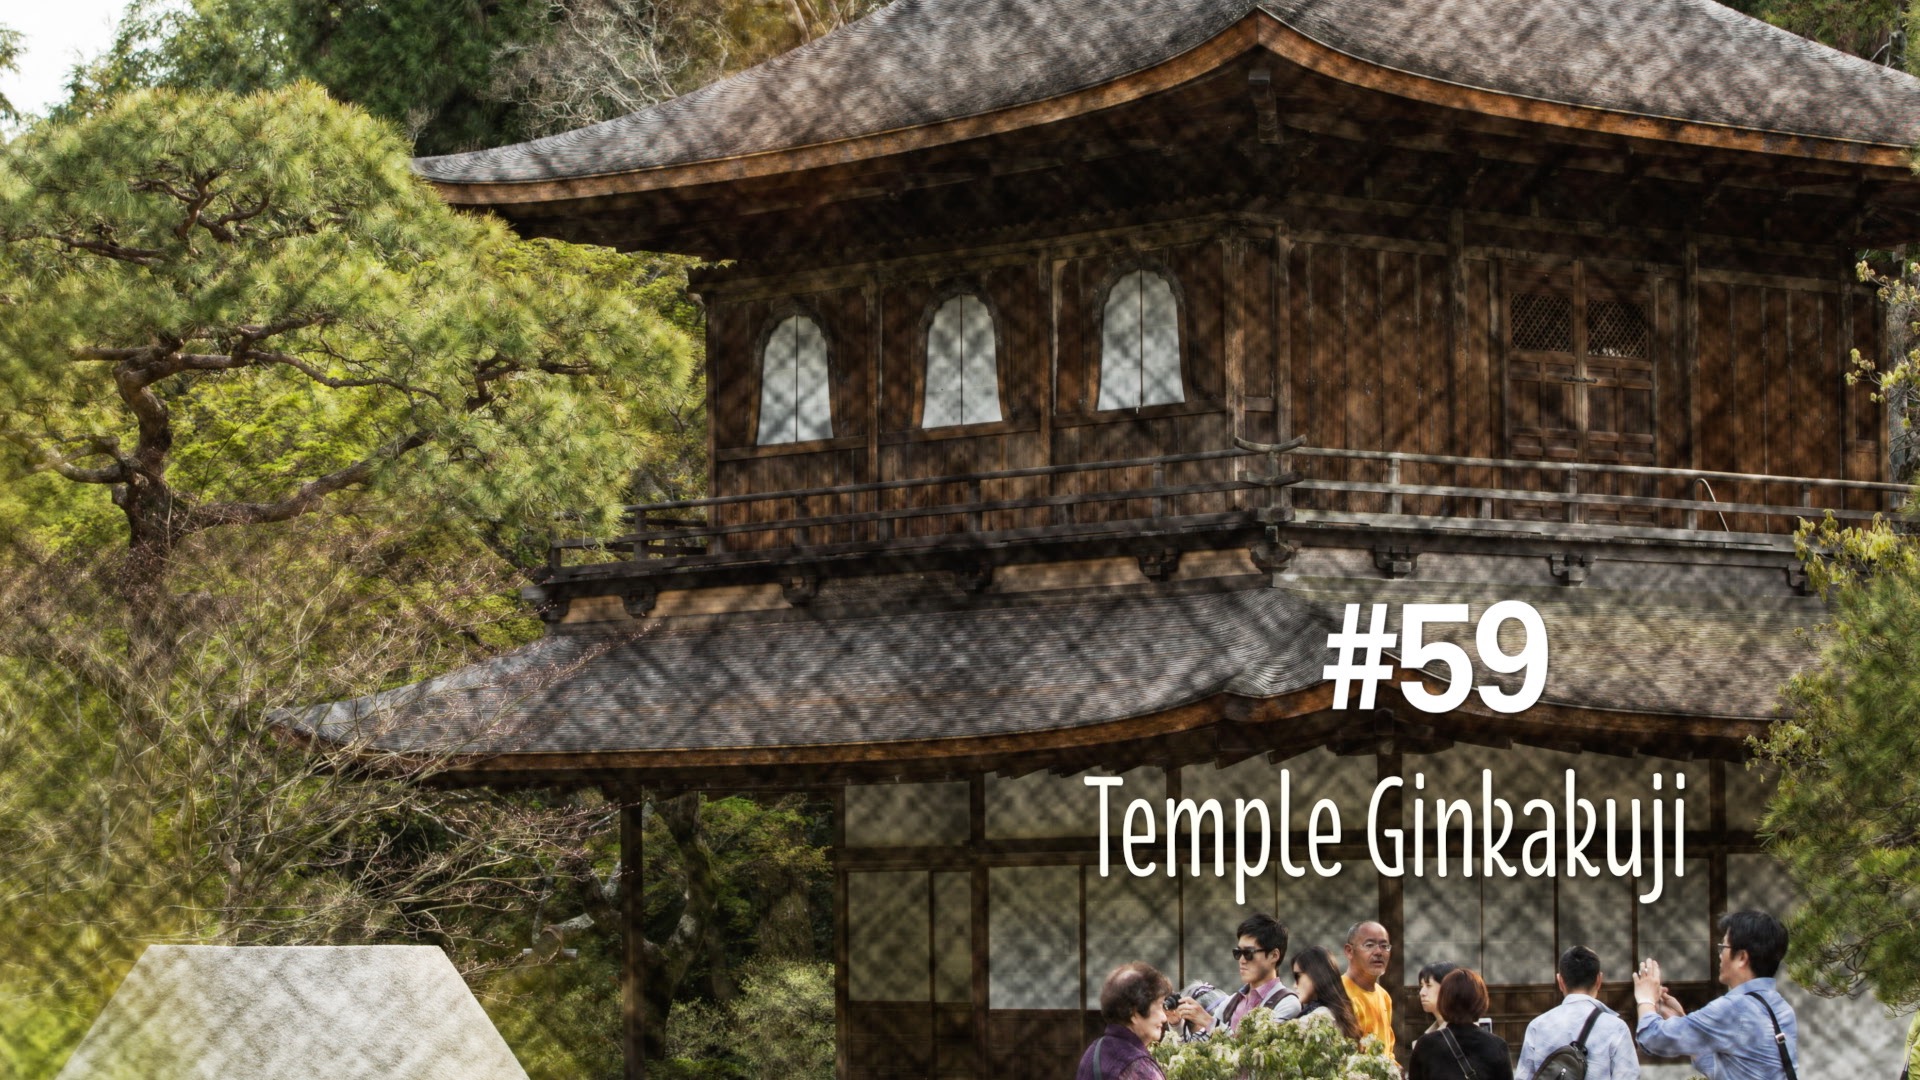 Le temple Ginkaku ji appelé aussi le pavillon d’argent